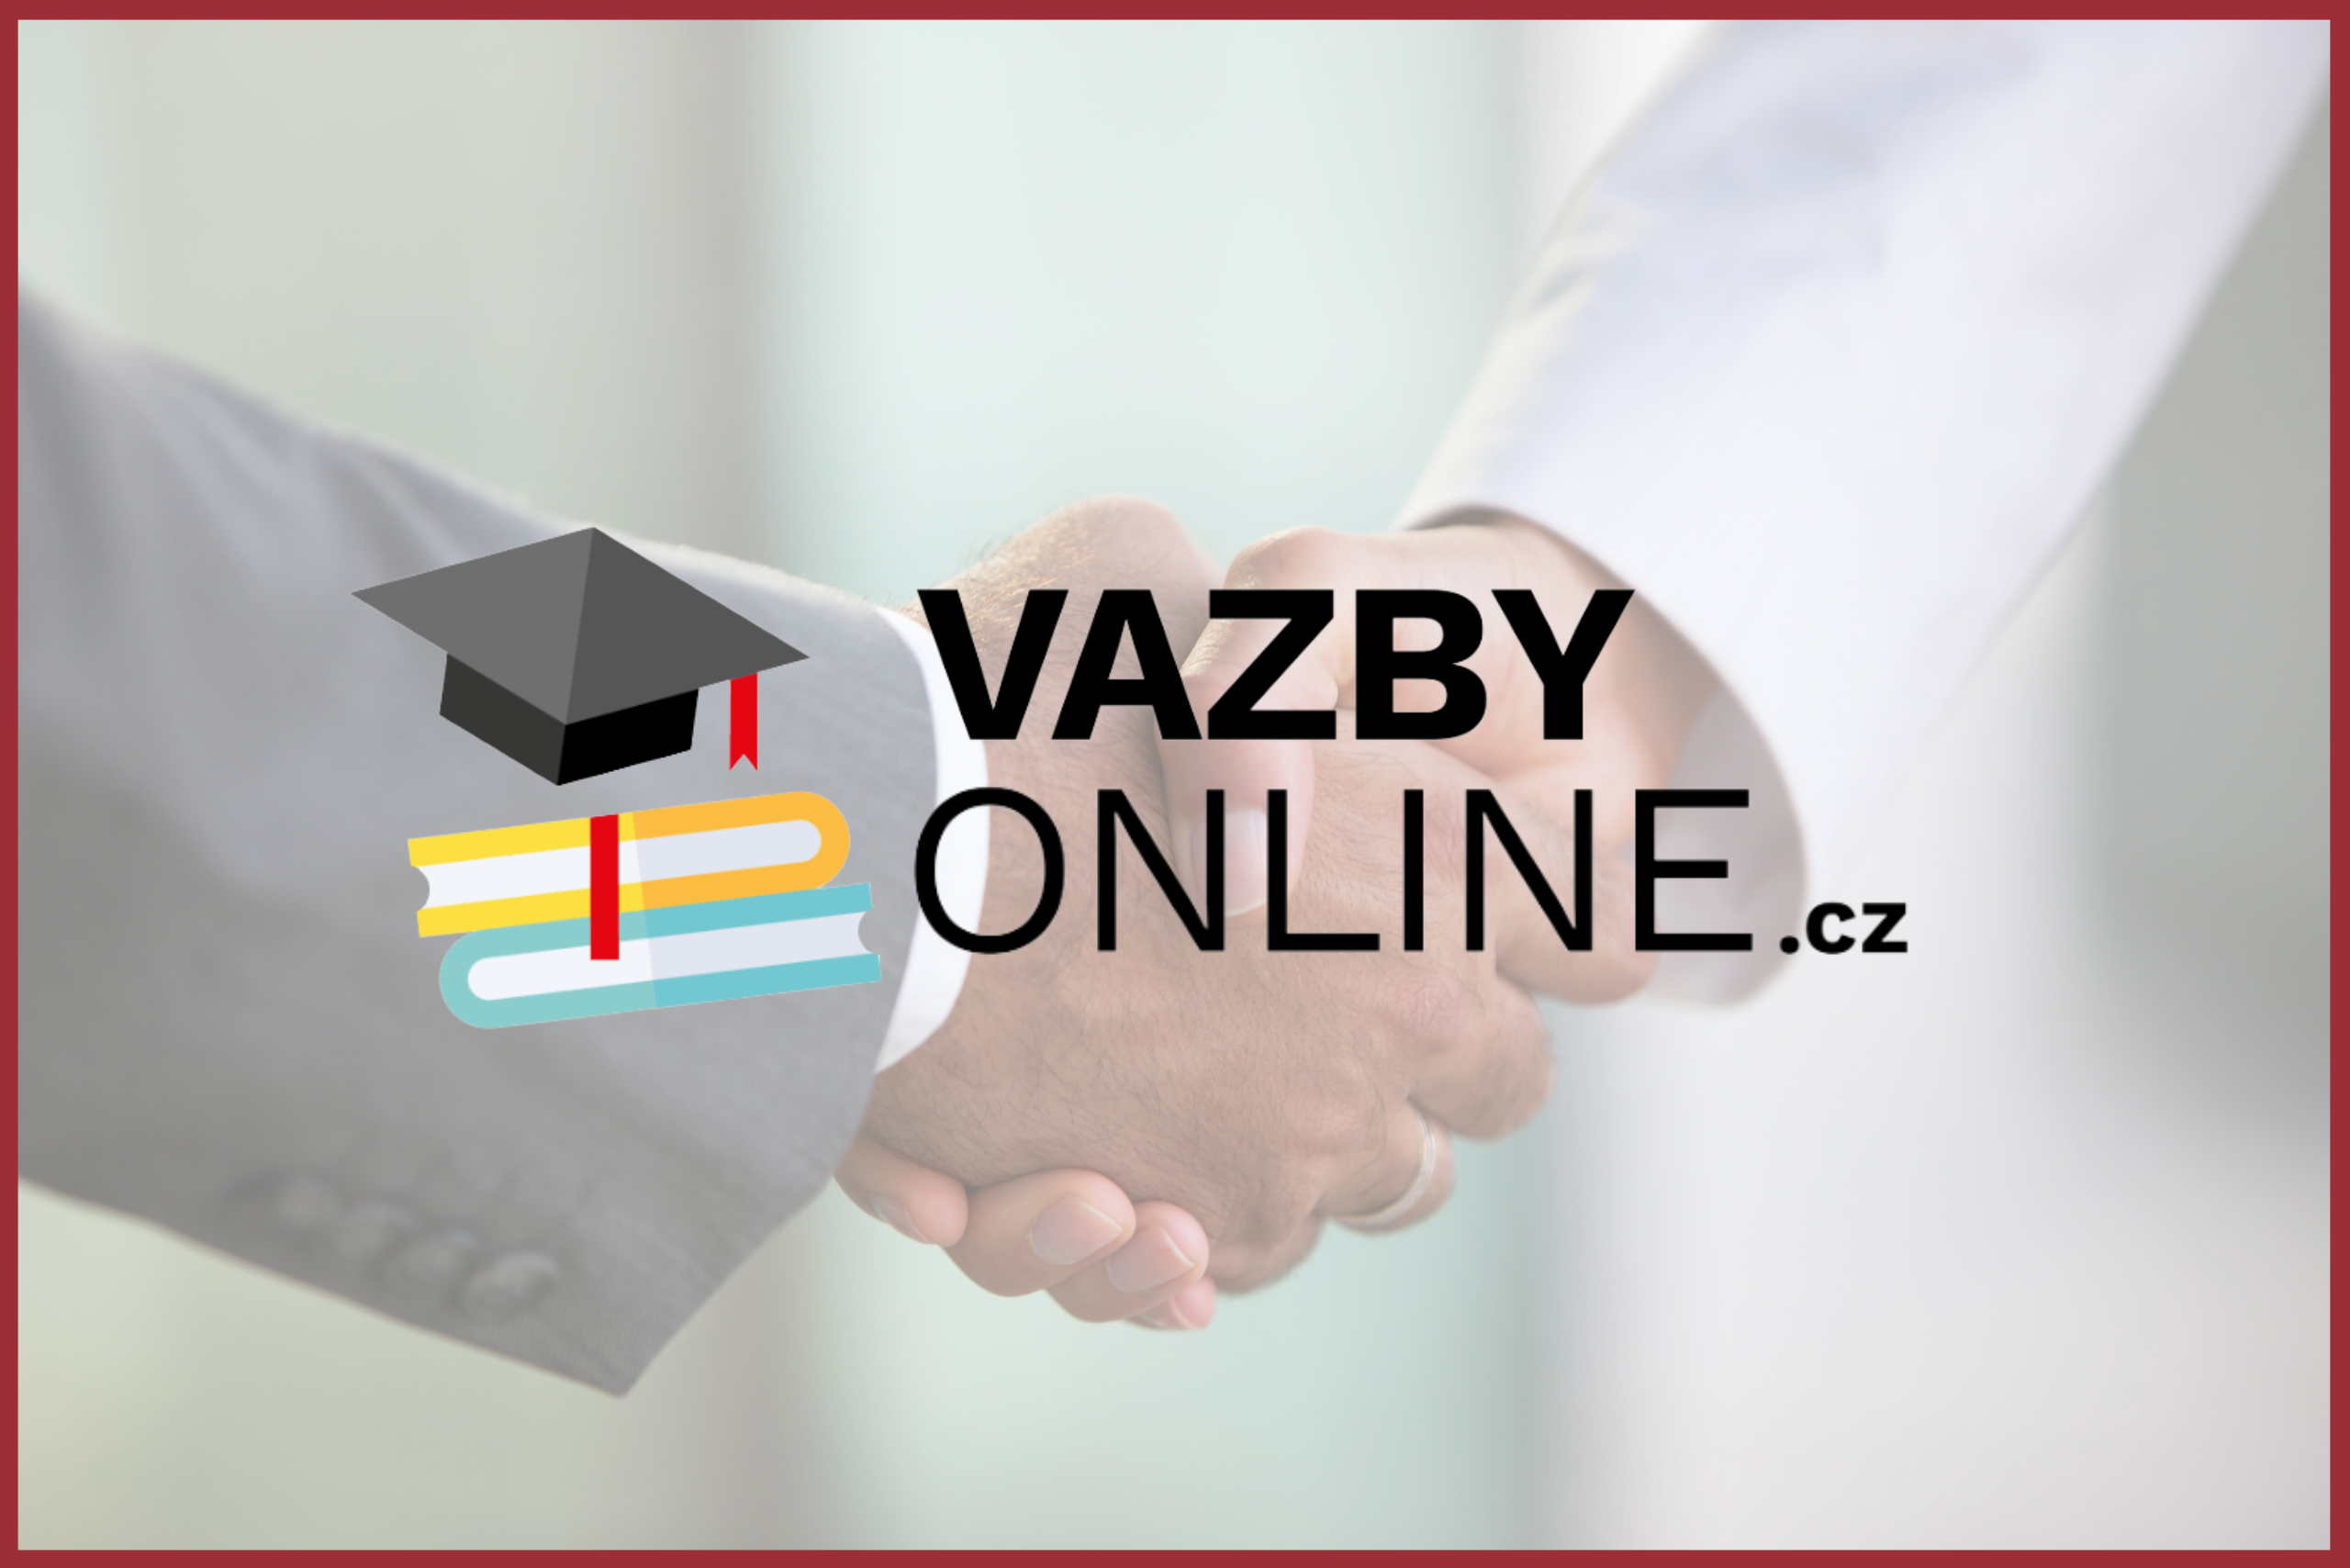 Nový partner VAZBY ONLINE.cz